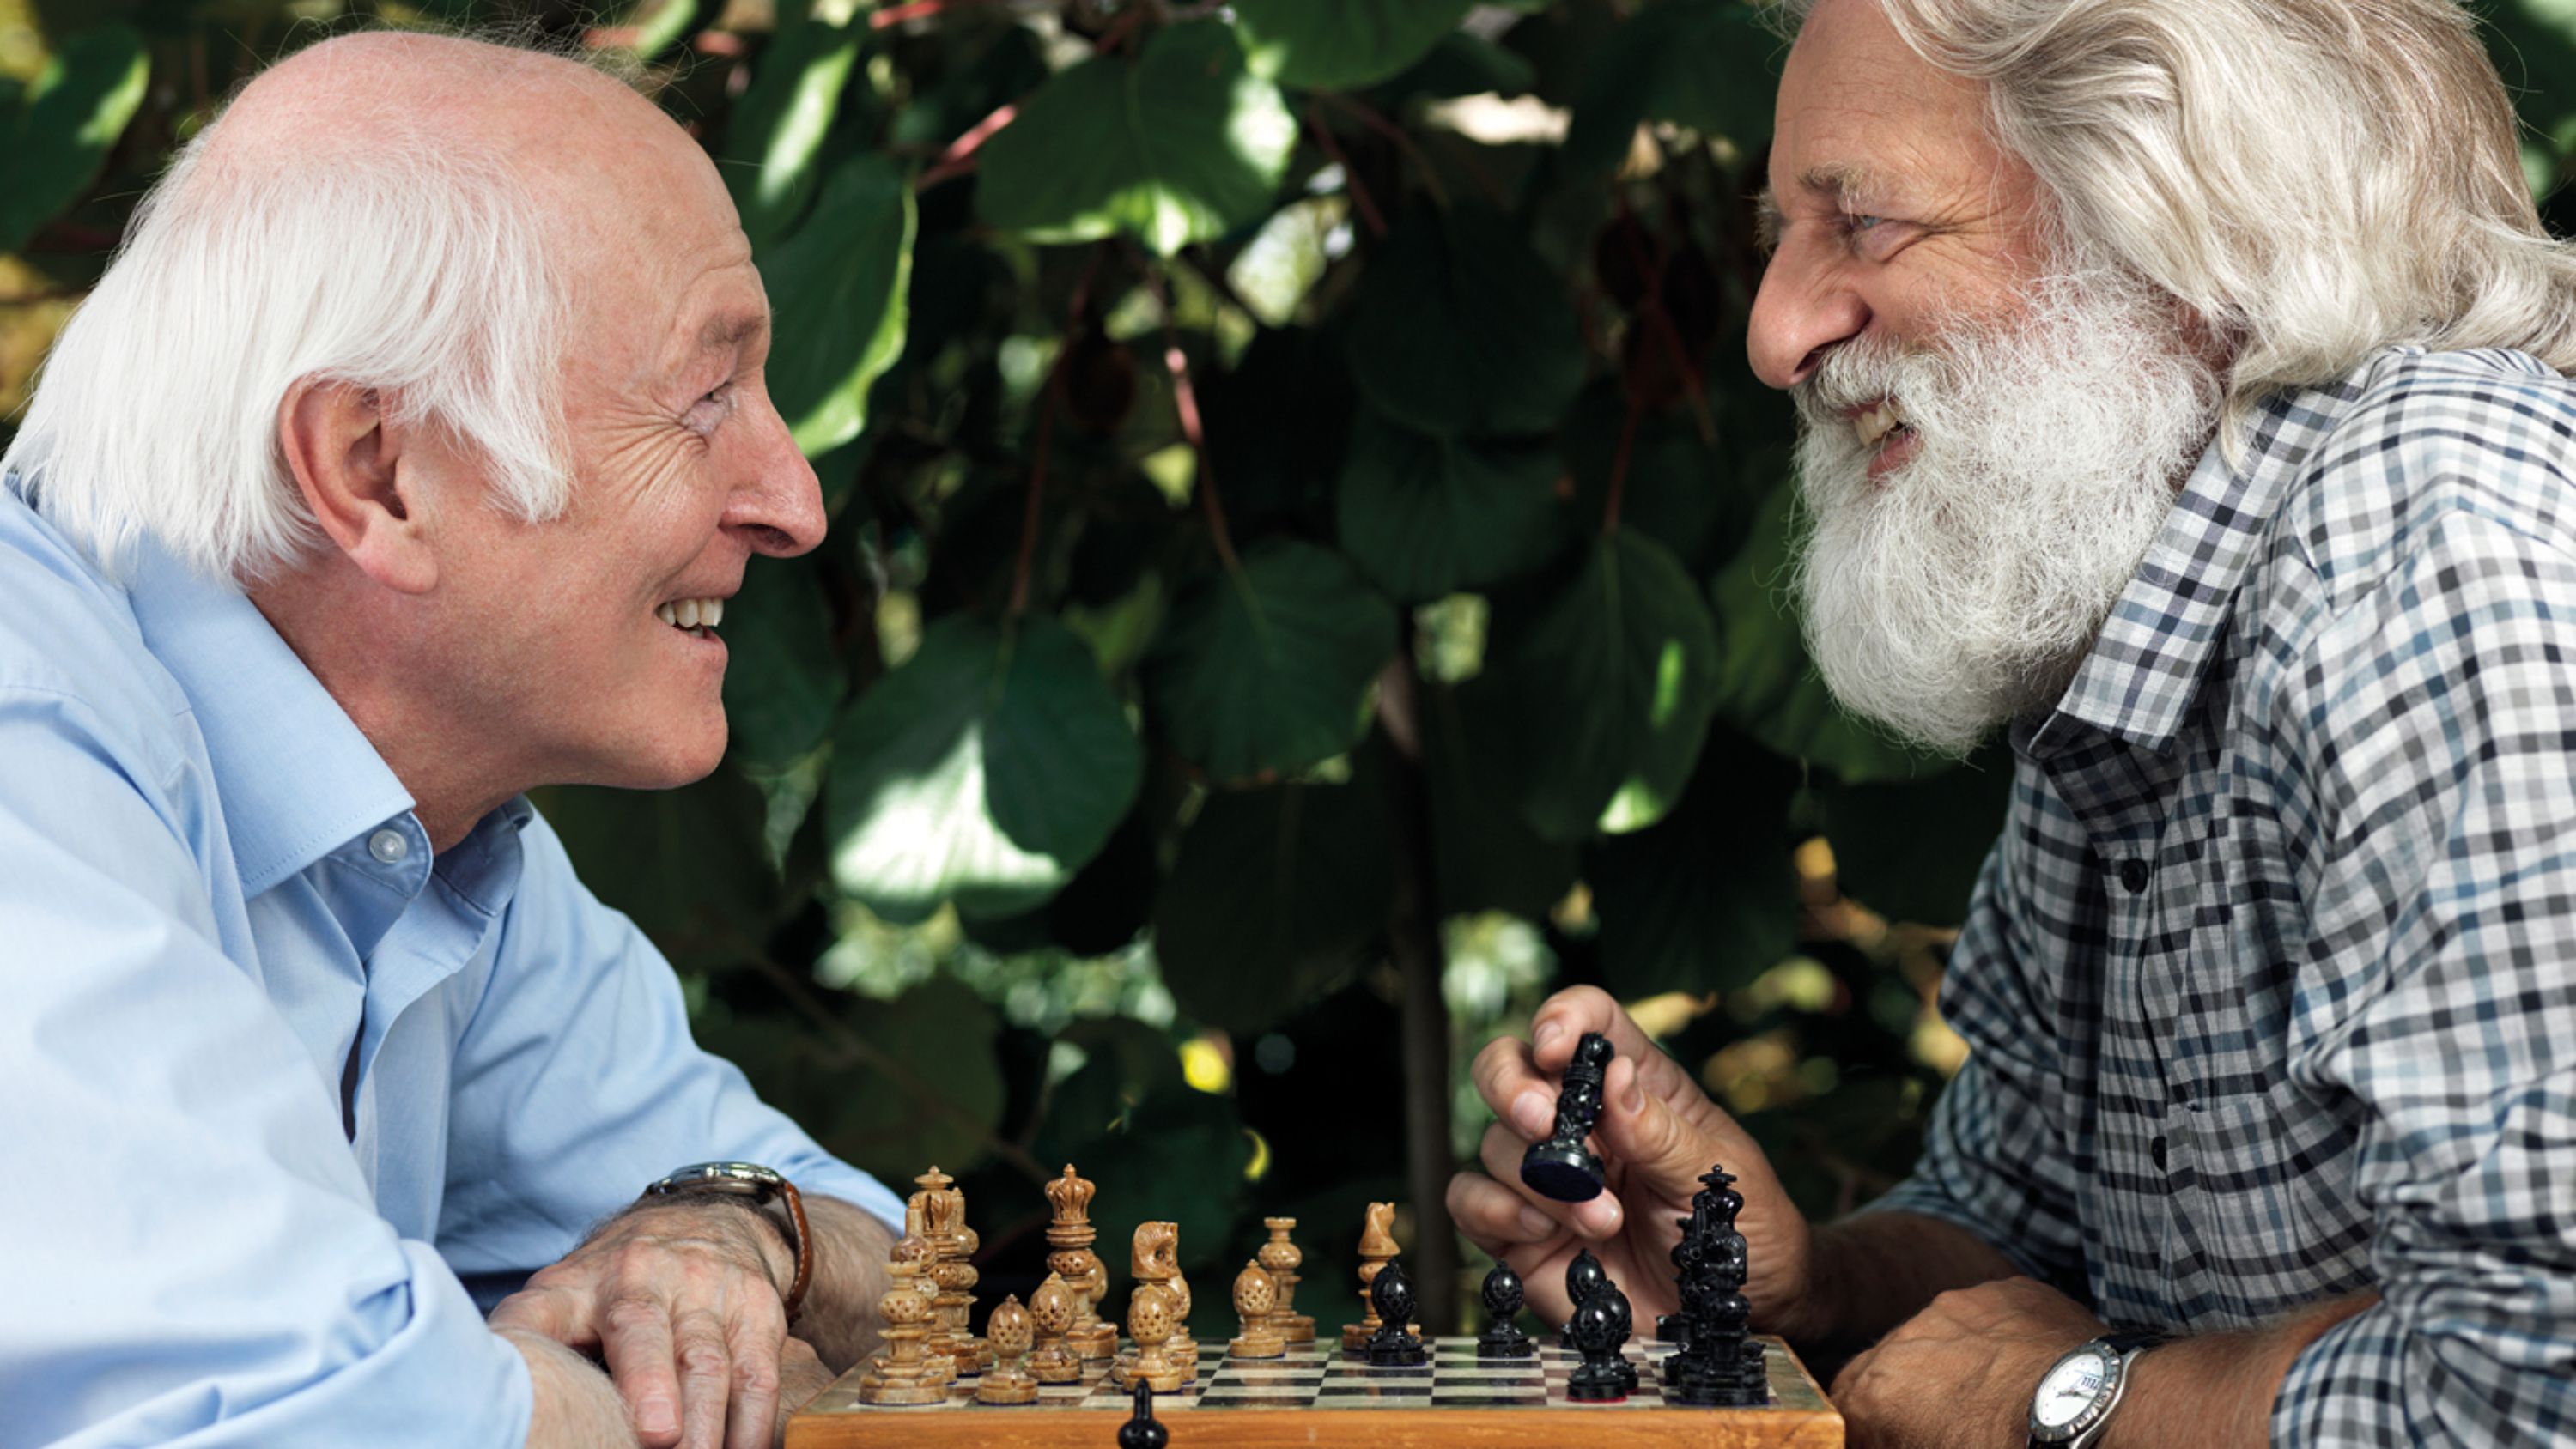 Abitare nell’anzianità: un anziano soddisfatto dell’istituto in cui vive 